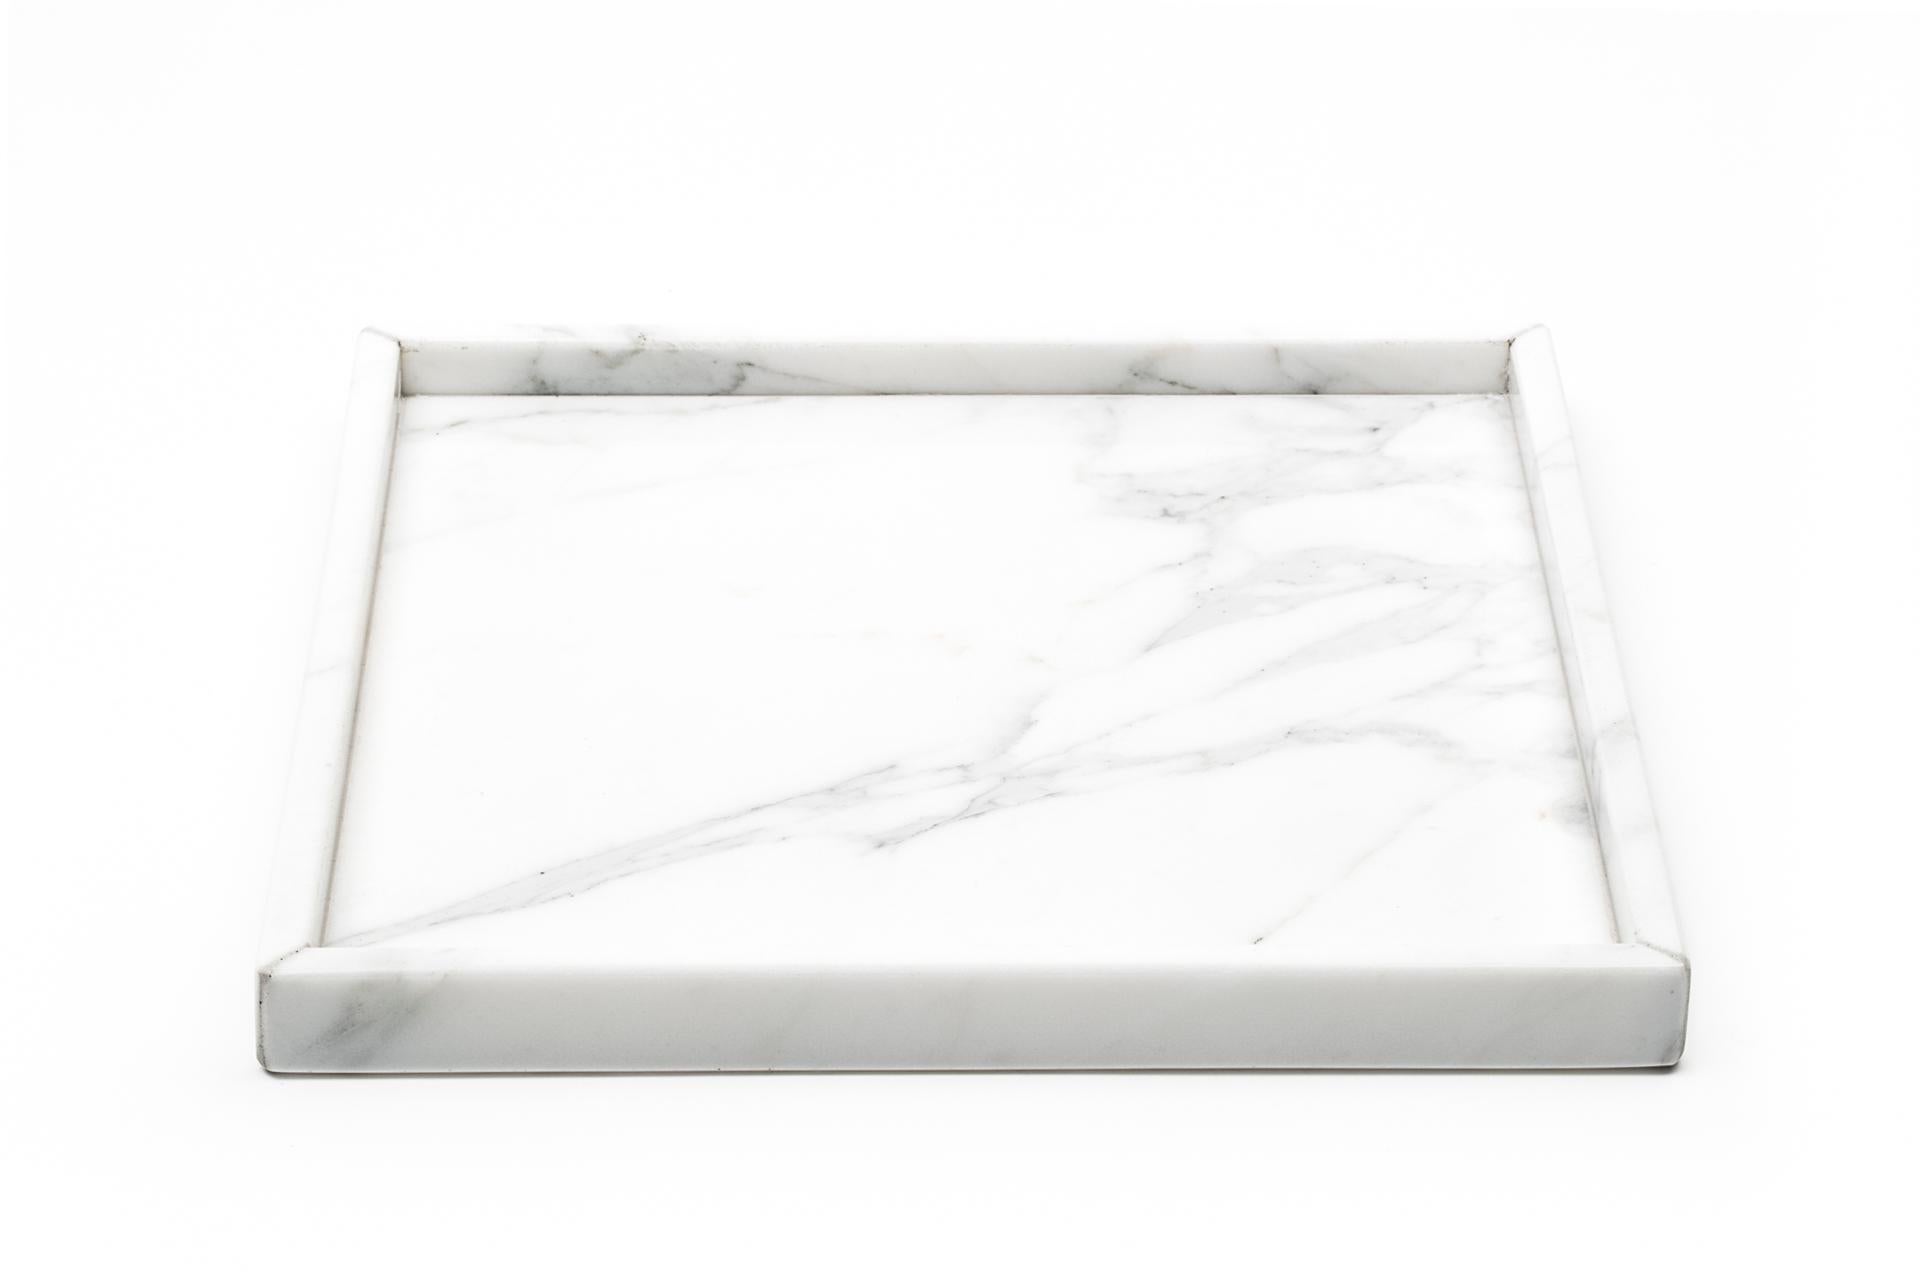 Quadratisches Tablett aus weißem Carrara-Marmor, ideal für den Wellnessbereich, das Badezimmer, aber auch als Tischdekoration oder im Eingangsbereich als Garderobendiener. Jedes Stück ist ein Unikat (jeder Marmorblock hat eine andere Maserung und